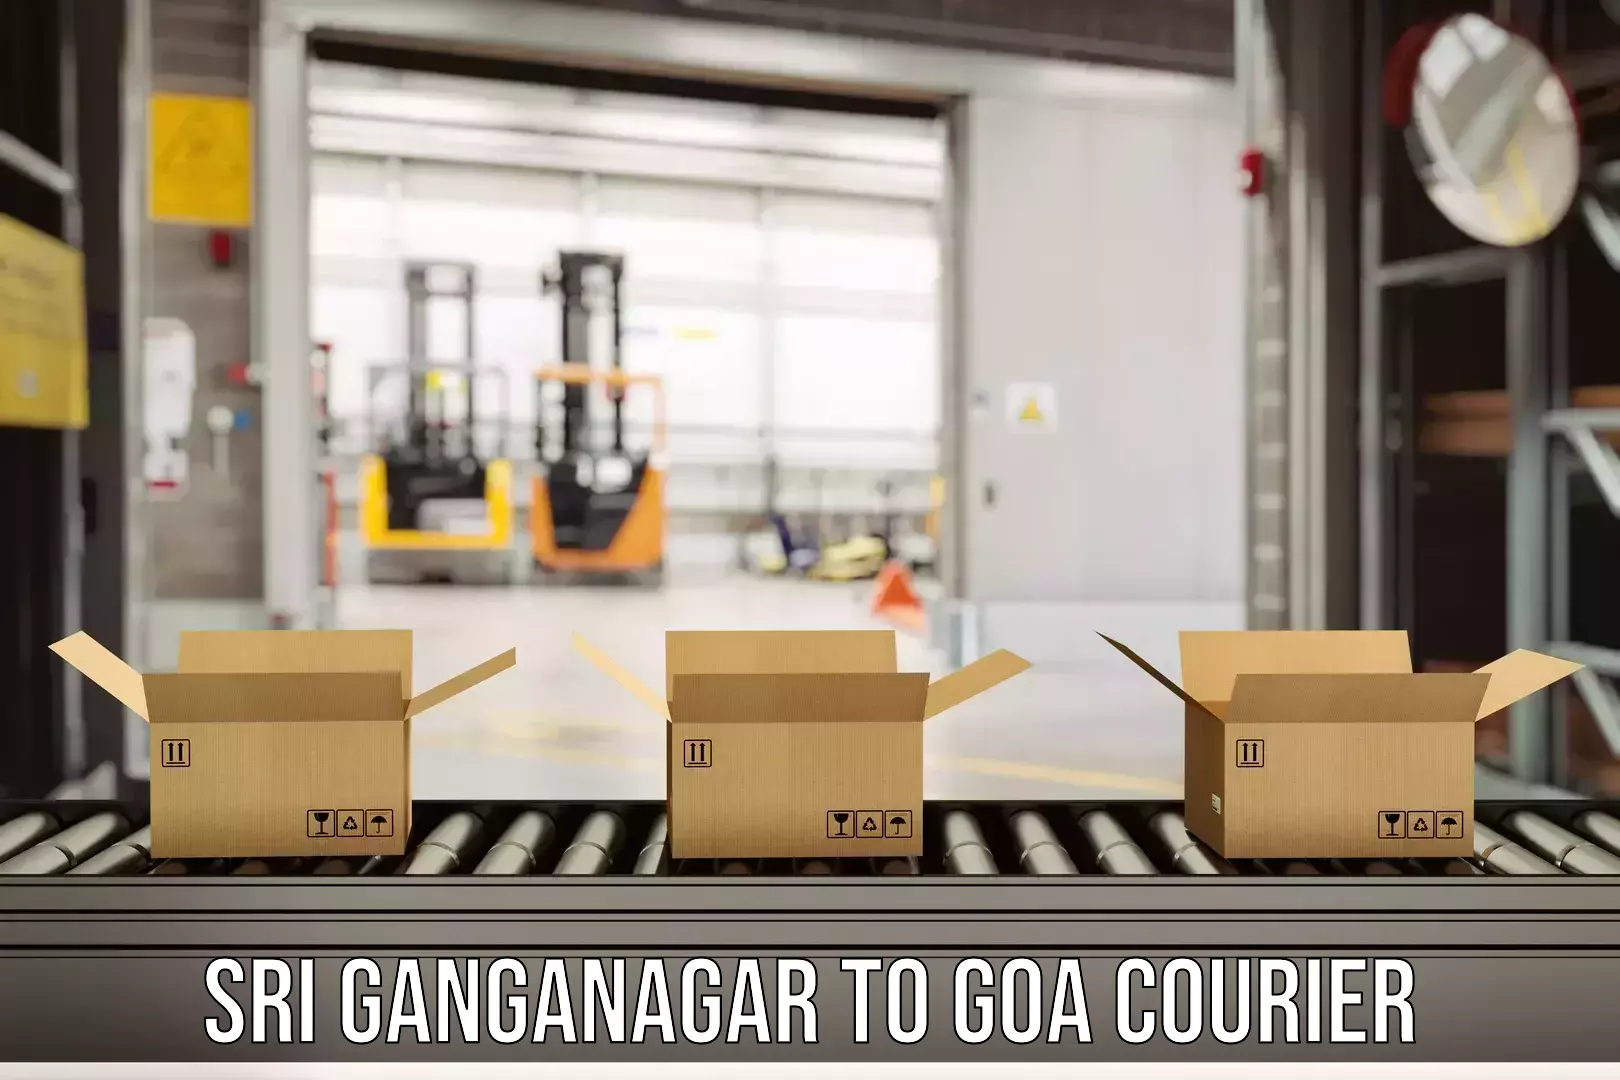 Professional courier services Sri Ganganagar to Vasco da Gama